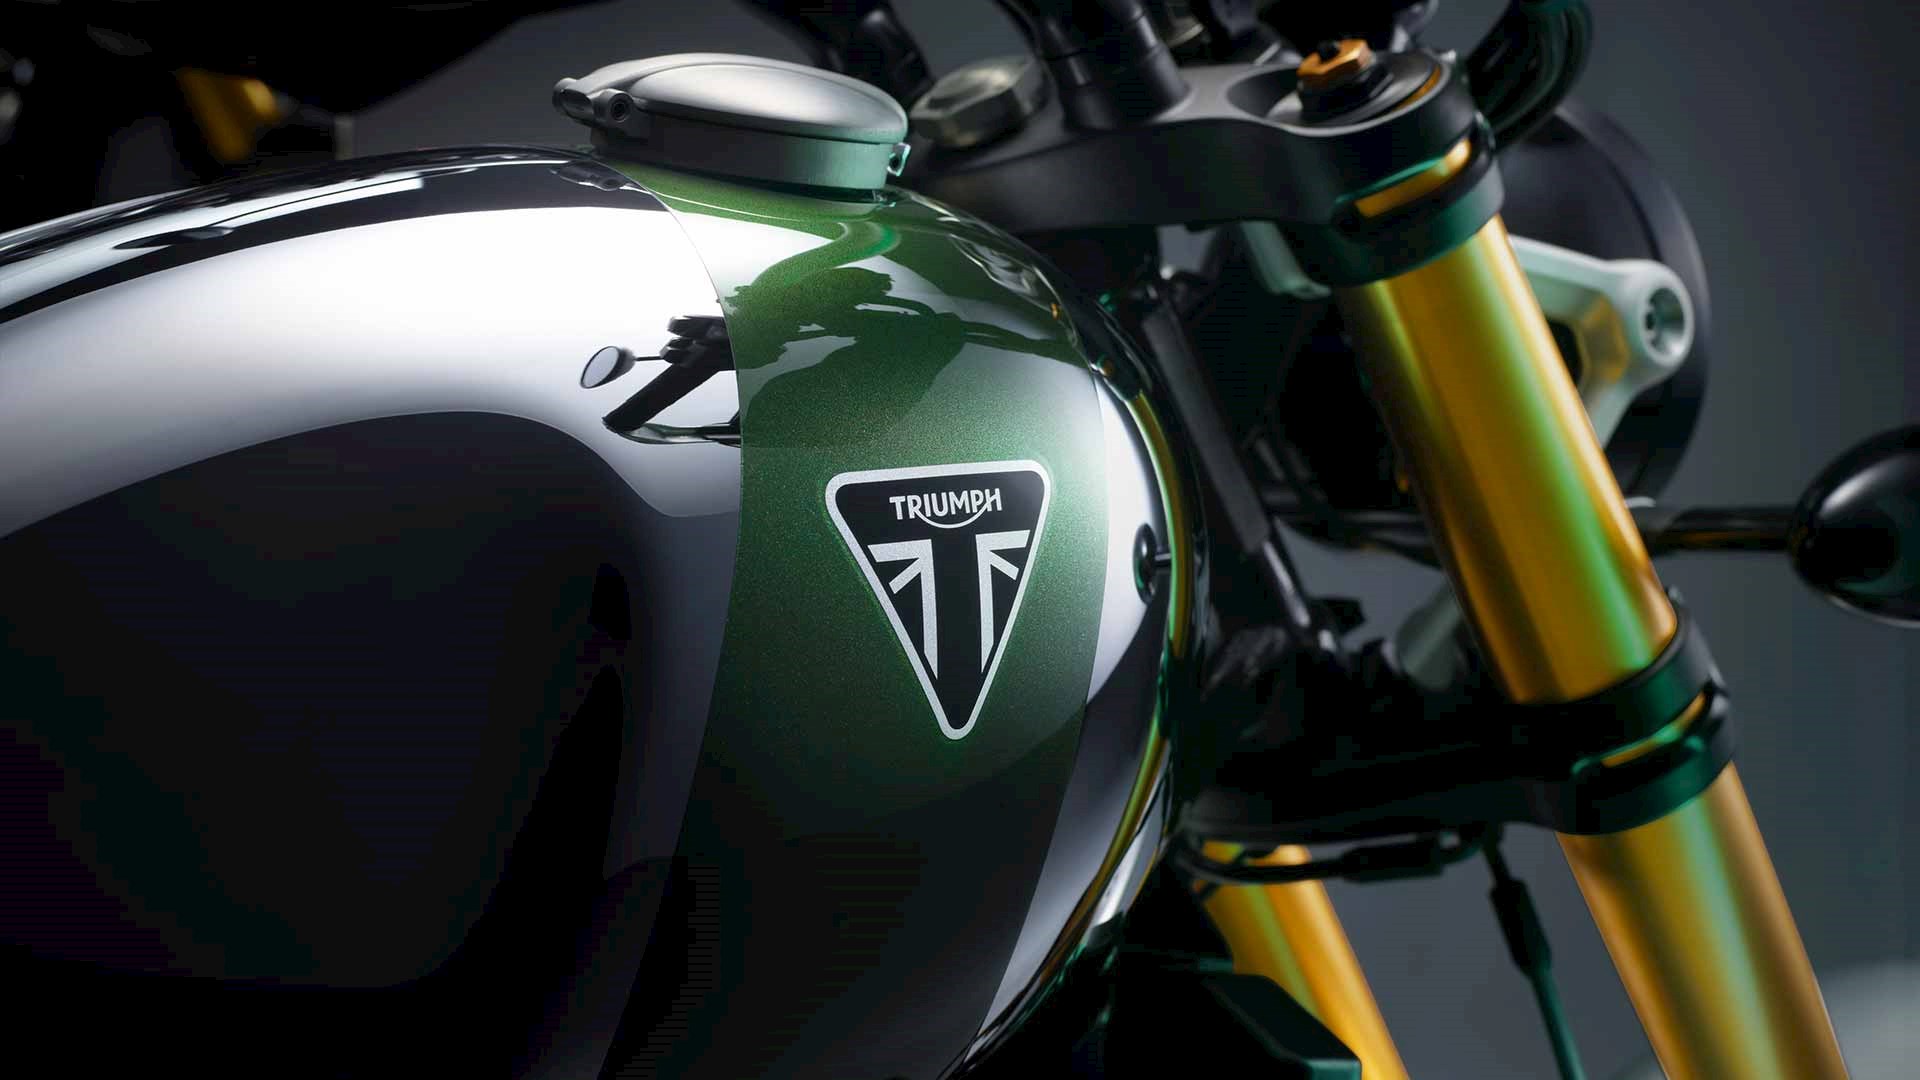 Motos Triumph Chrome Edition vêm ao Brasil, Mobilidade Estadão